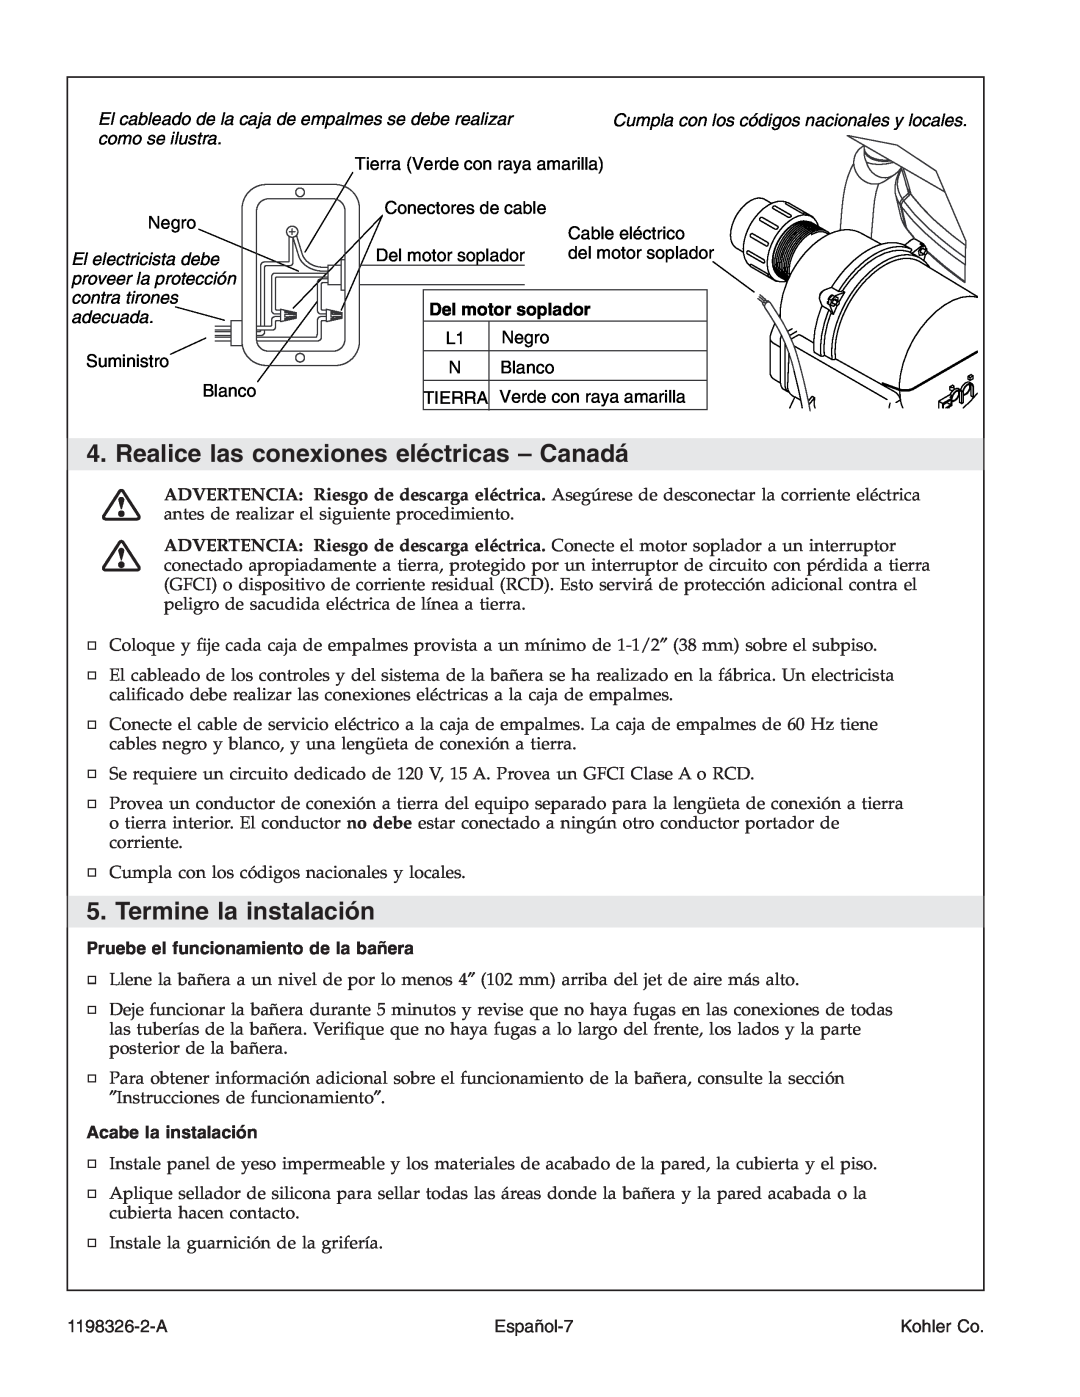 Kohler 1198326-2-A manual Realice las conexiones eléctricas - Canadá, Termine la instalación, Del motor soplador, Español-7 